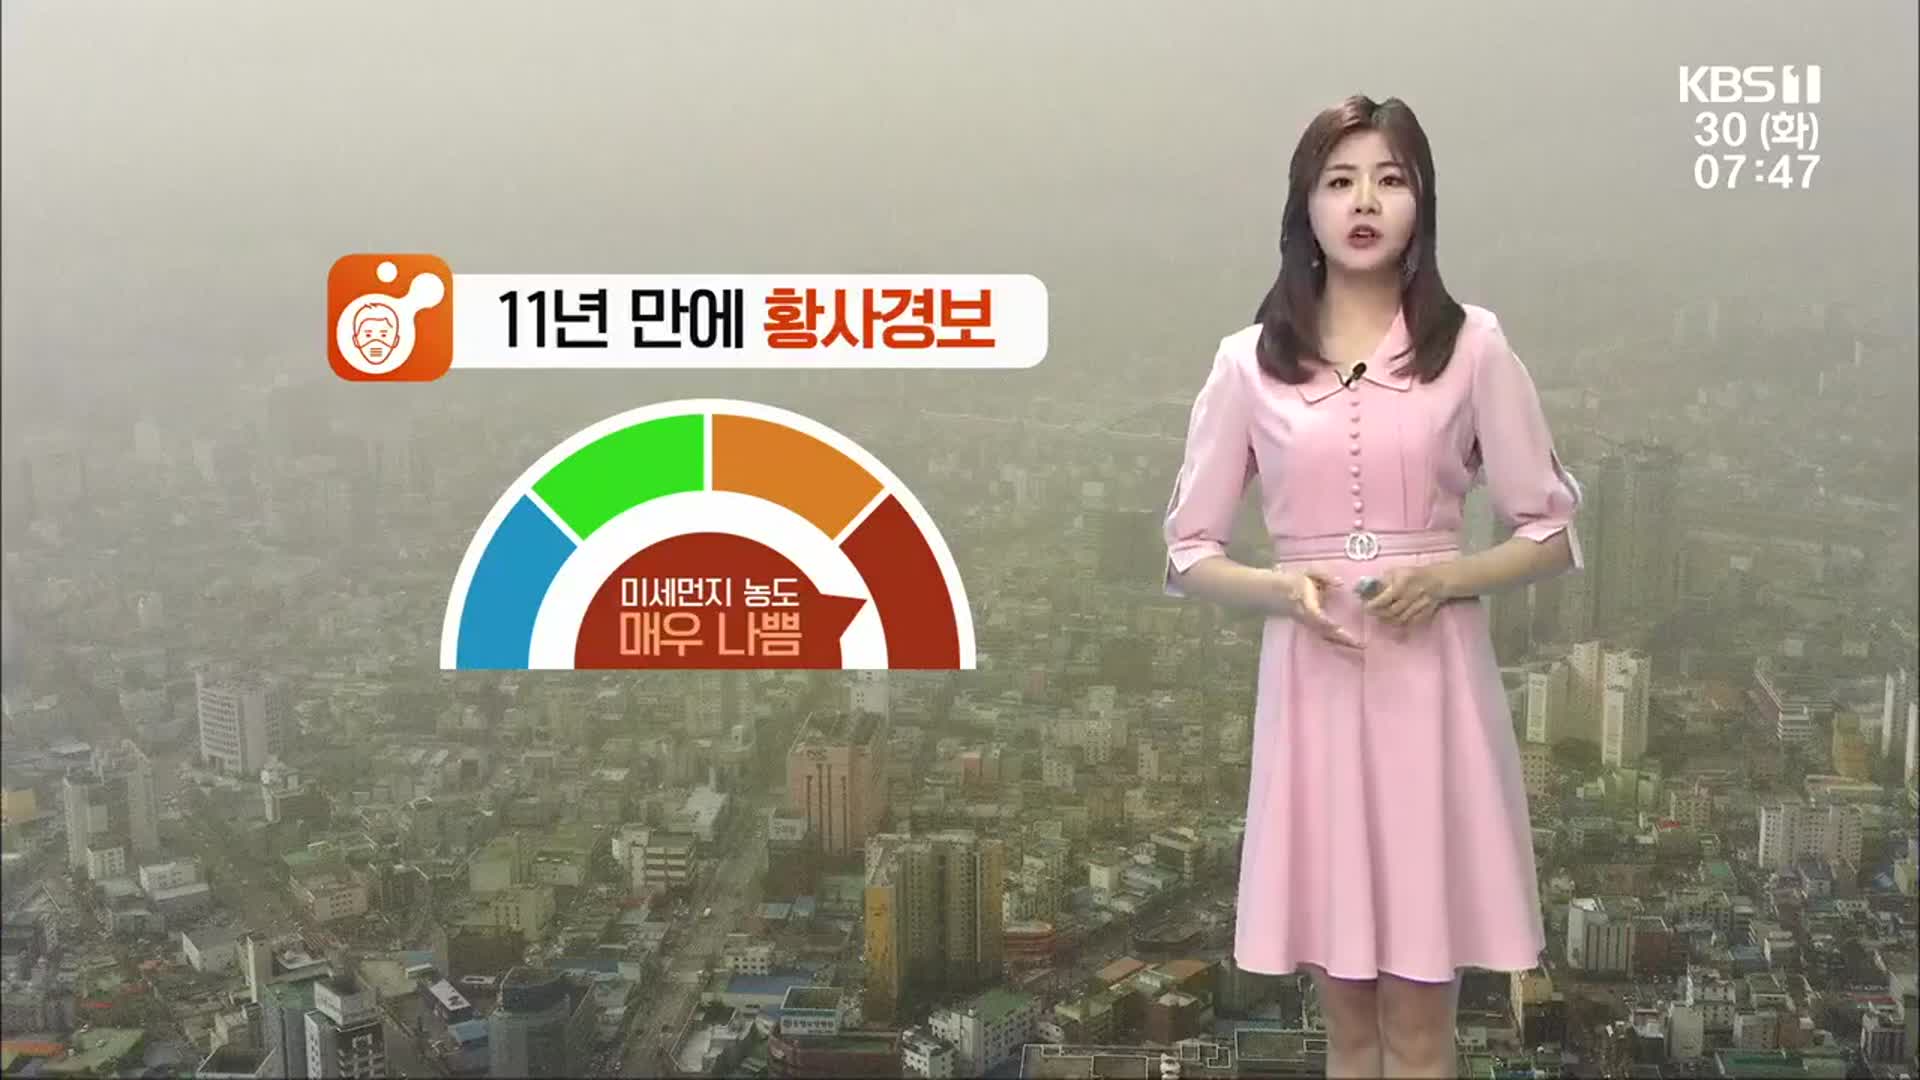 [날씨] 광주·전남 11년 만에 황사경보…미세먼지 ‘매우 나쁨’